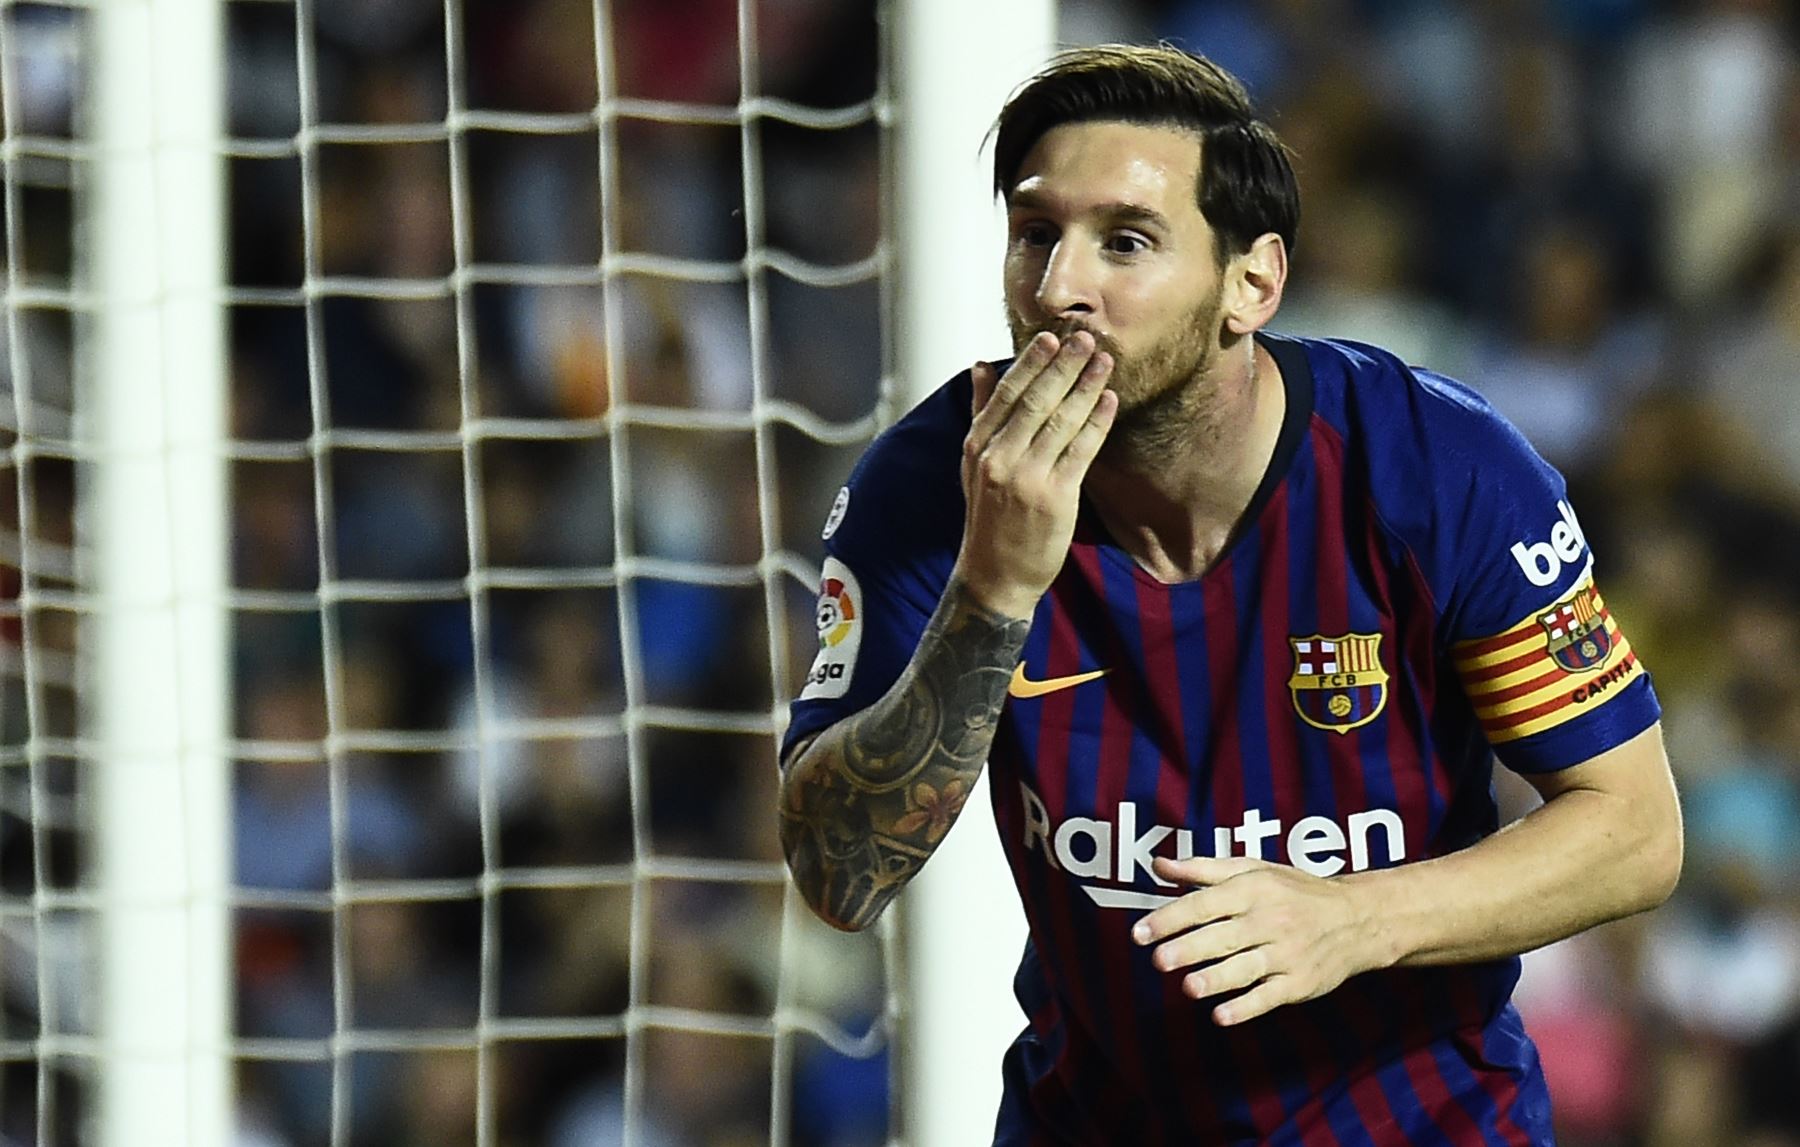 El delantero argentino de Barcelona Lionel Messi celebra un gol durante el partido de fútbol de la liga española.AFP